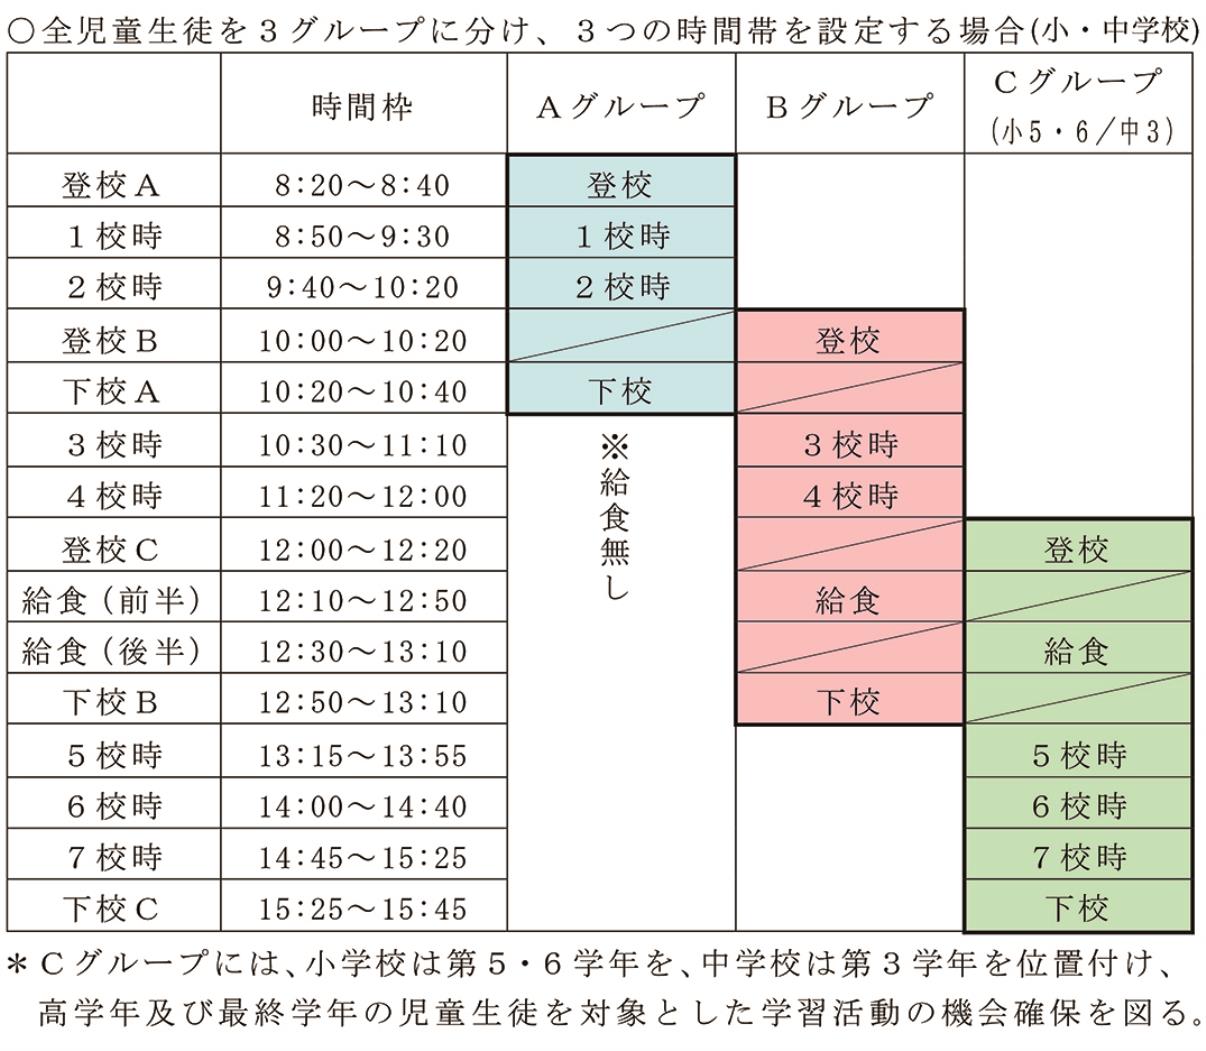 札幌市教委６月再開した場合の登校について